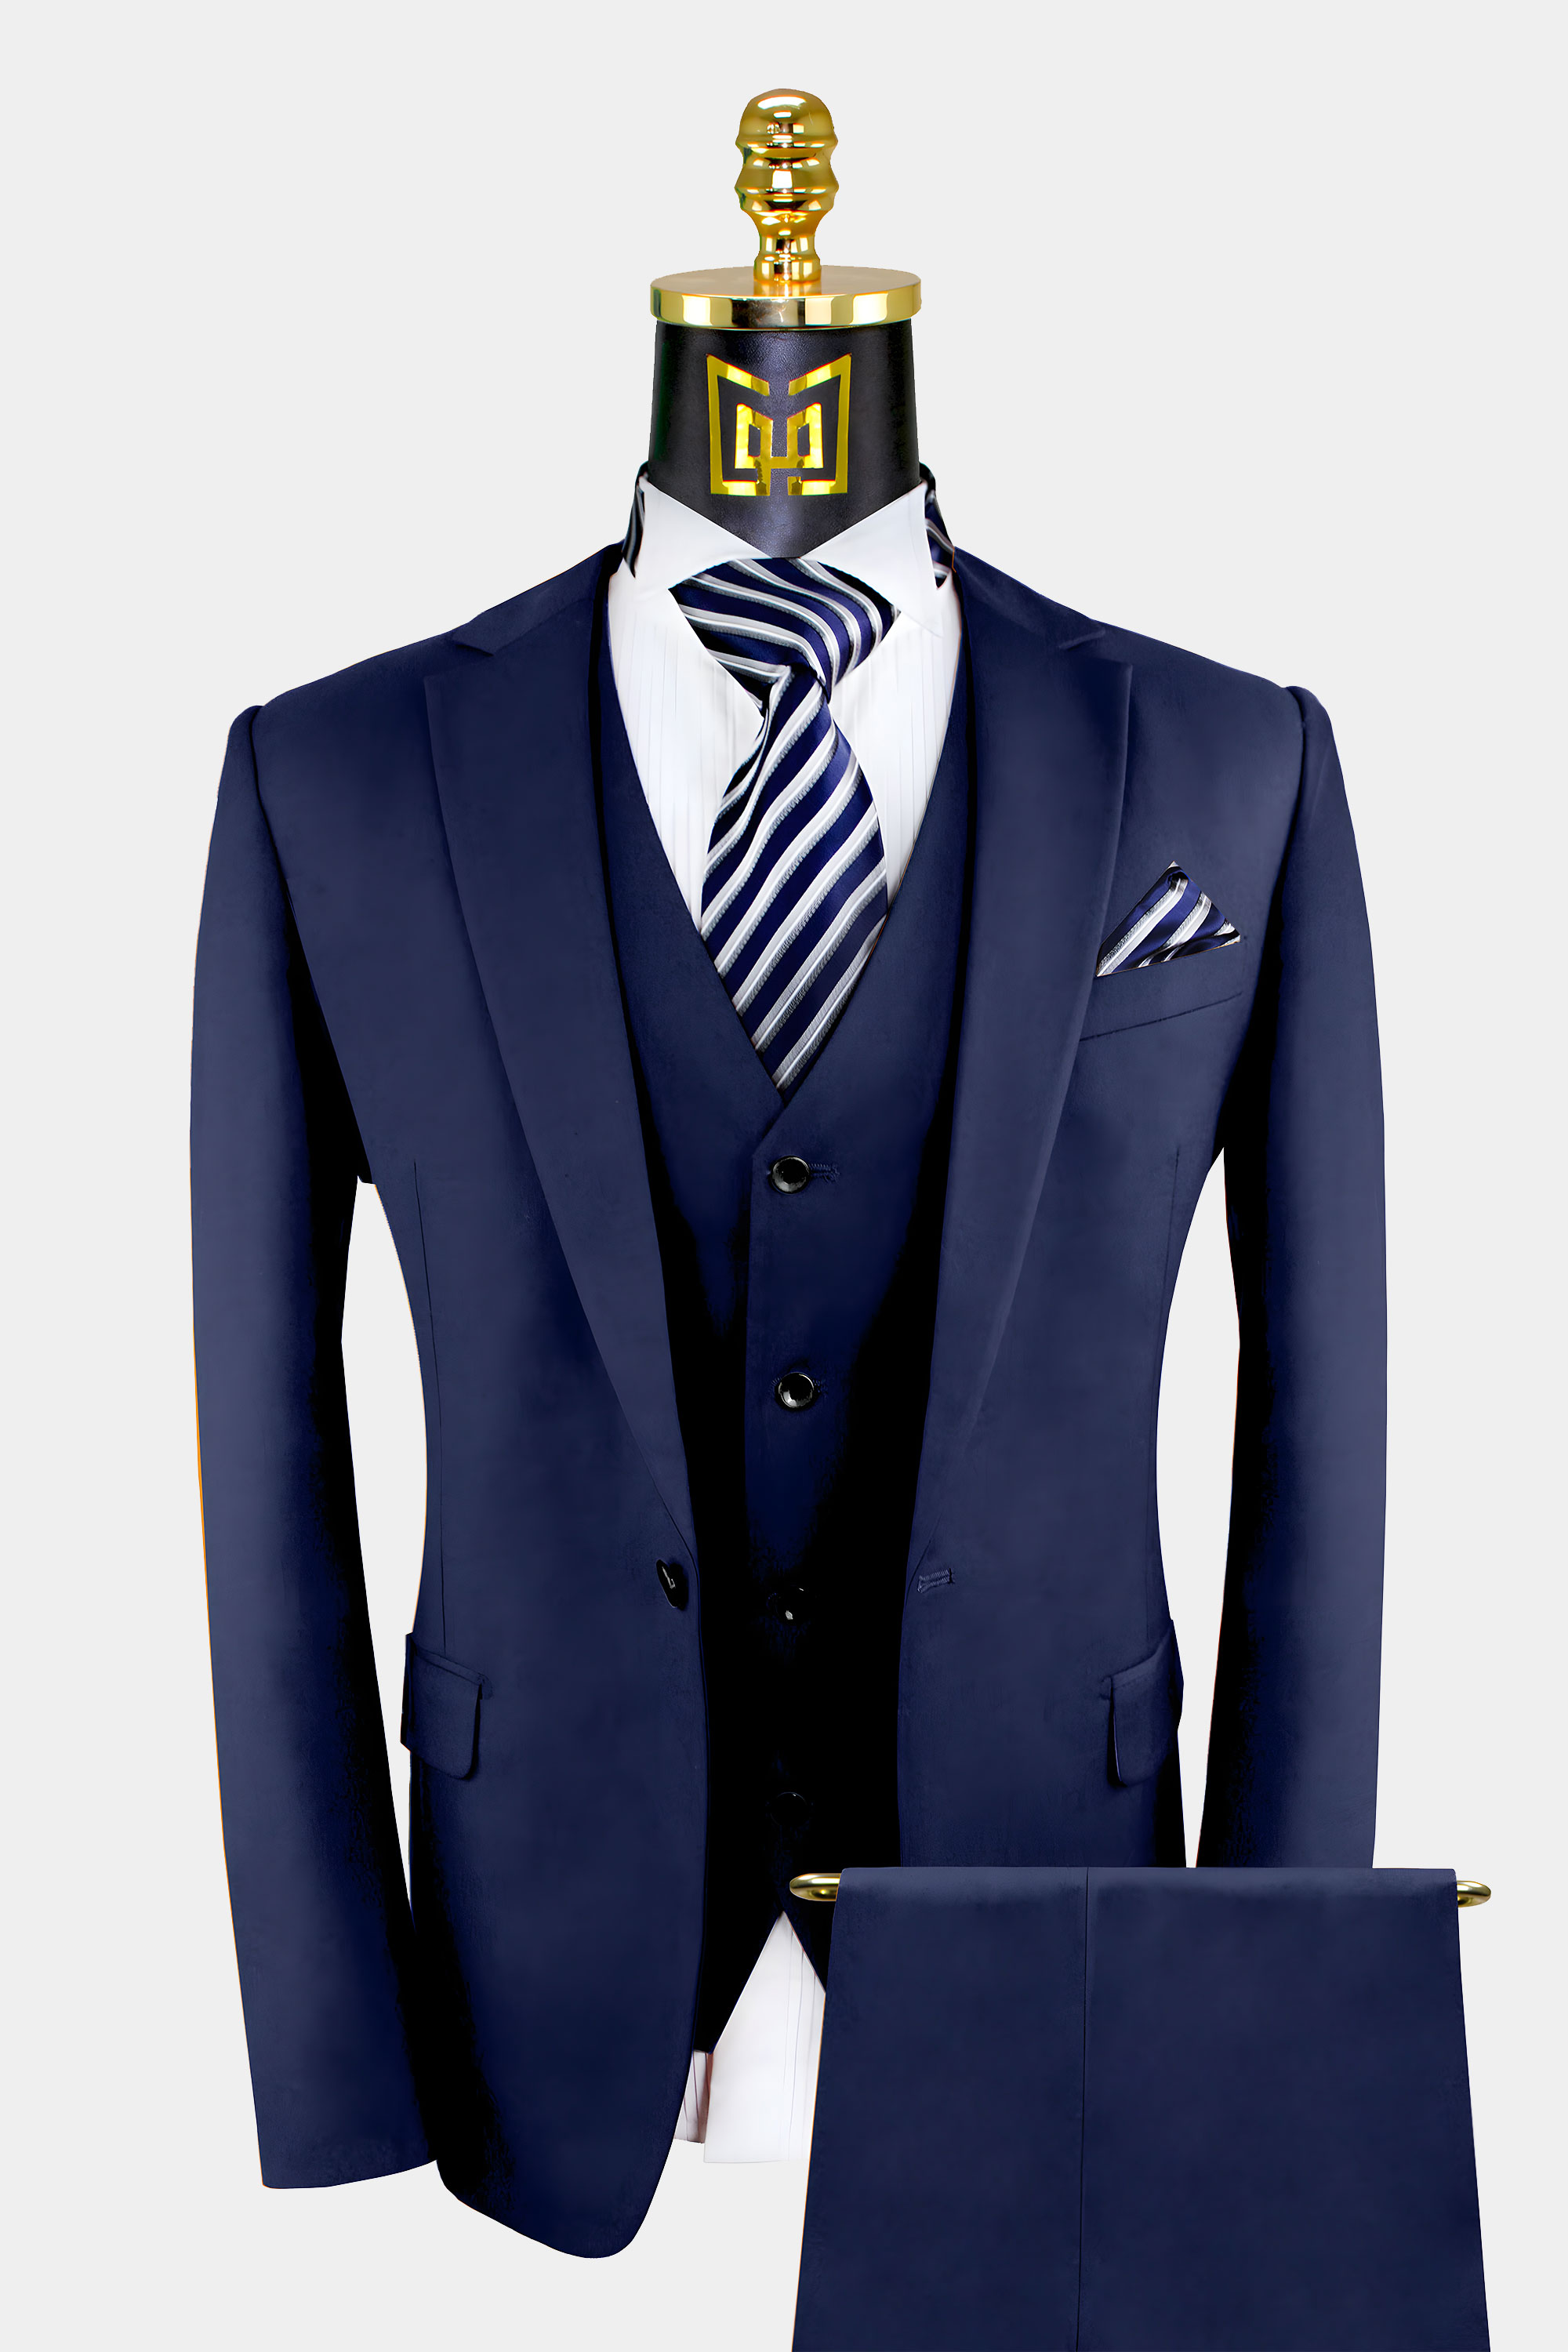 3 Piece Navy Blue Suit Gentleman S Guru